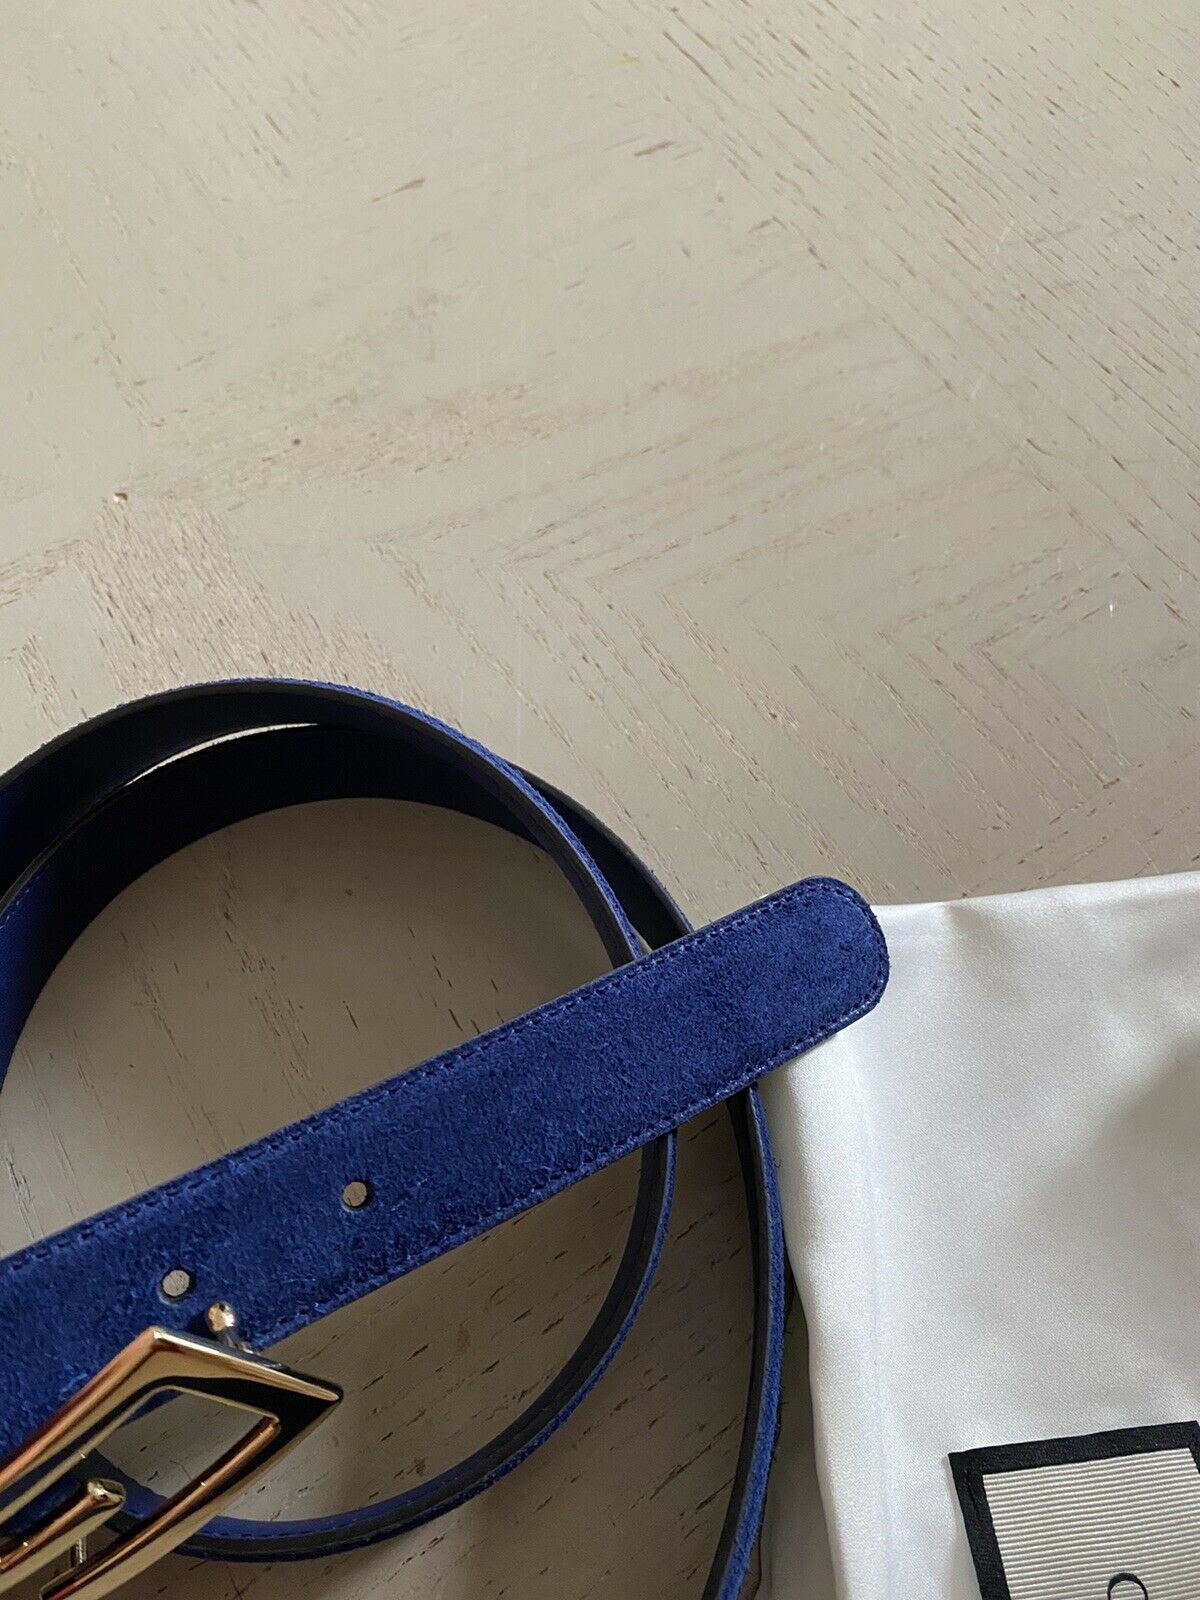 Новый мужской замшевый ремень GG Gucci за 890 долларов, темно-синий 110/44, Италия